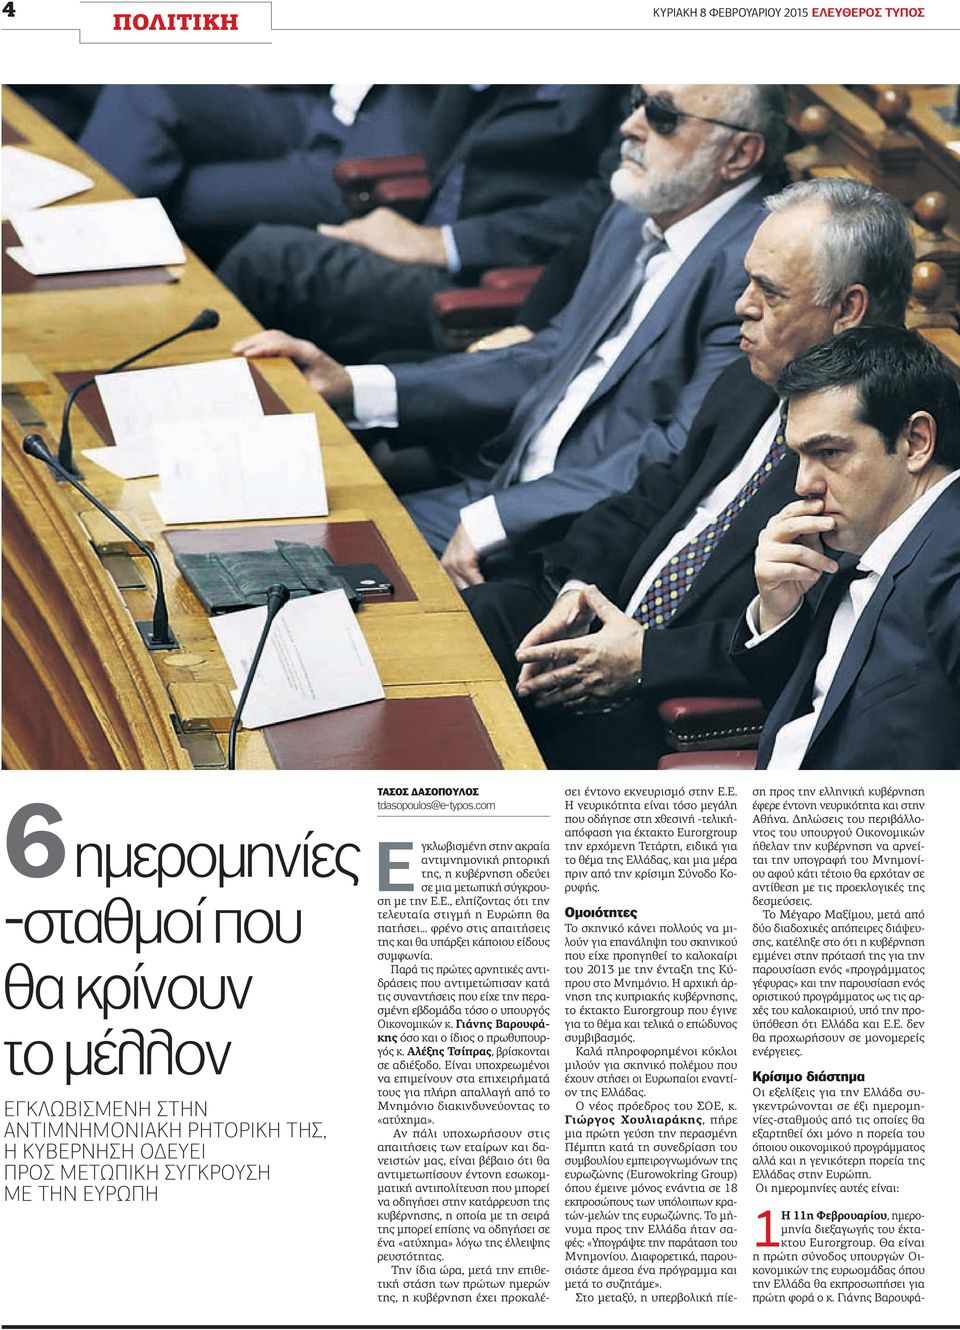 Παρά τις πρώτες αρνητικές αντιδράσεις που αντιμετώπισαν κατά τις συναντήσεις που είχε την περασμένη εβδομάδα τόσο ο υπουργός Οικονομικών κ. Γιάνης Βαρουφάκης όσο και ο ίδιος ο πρωθυπουργός κ.